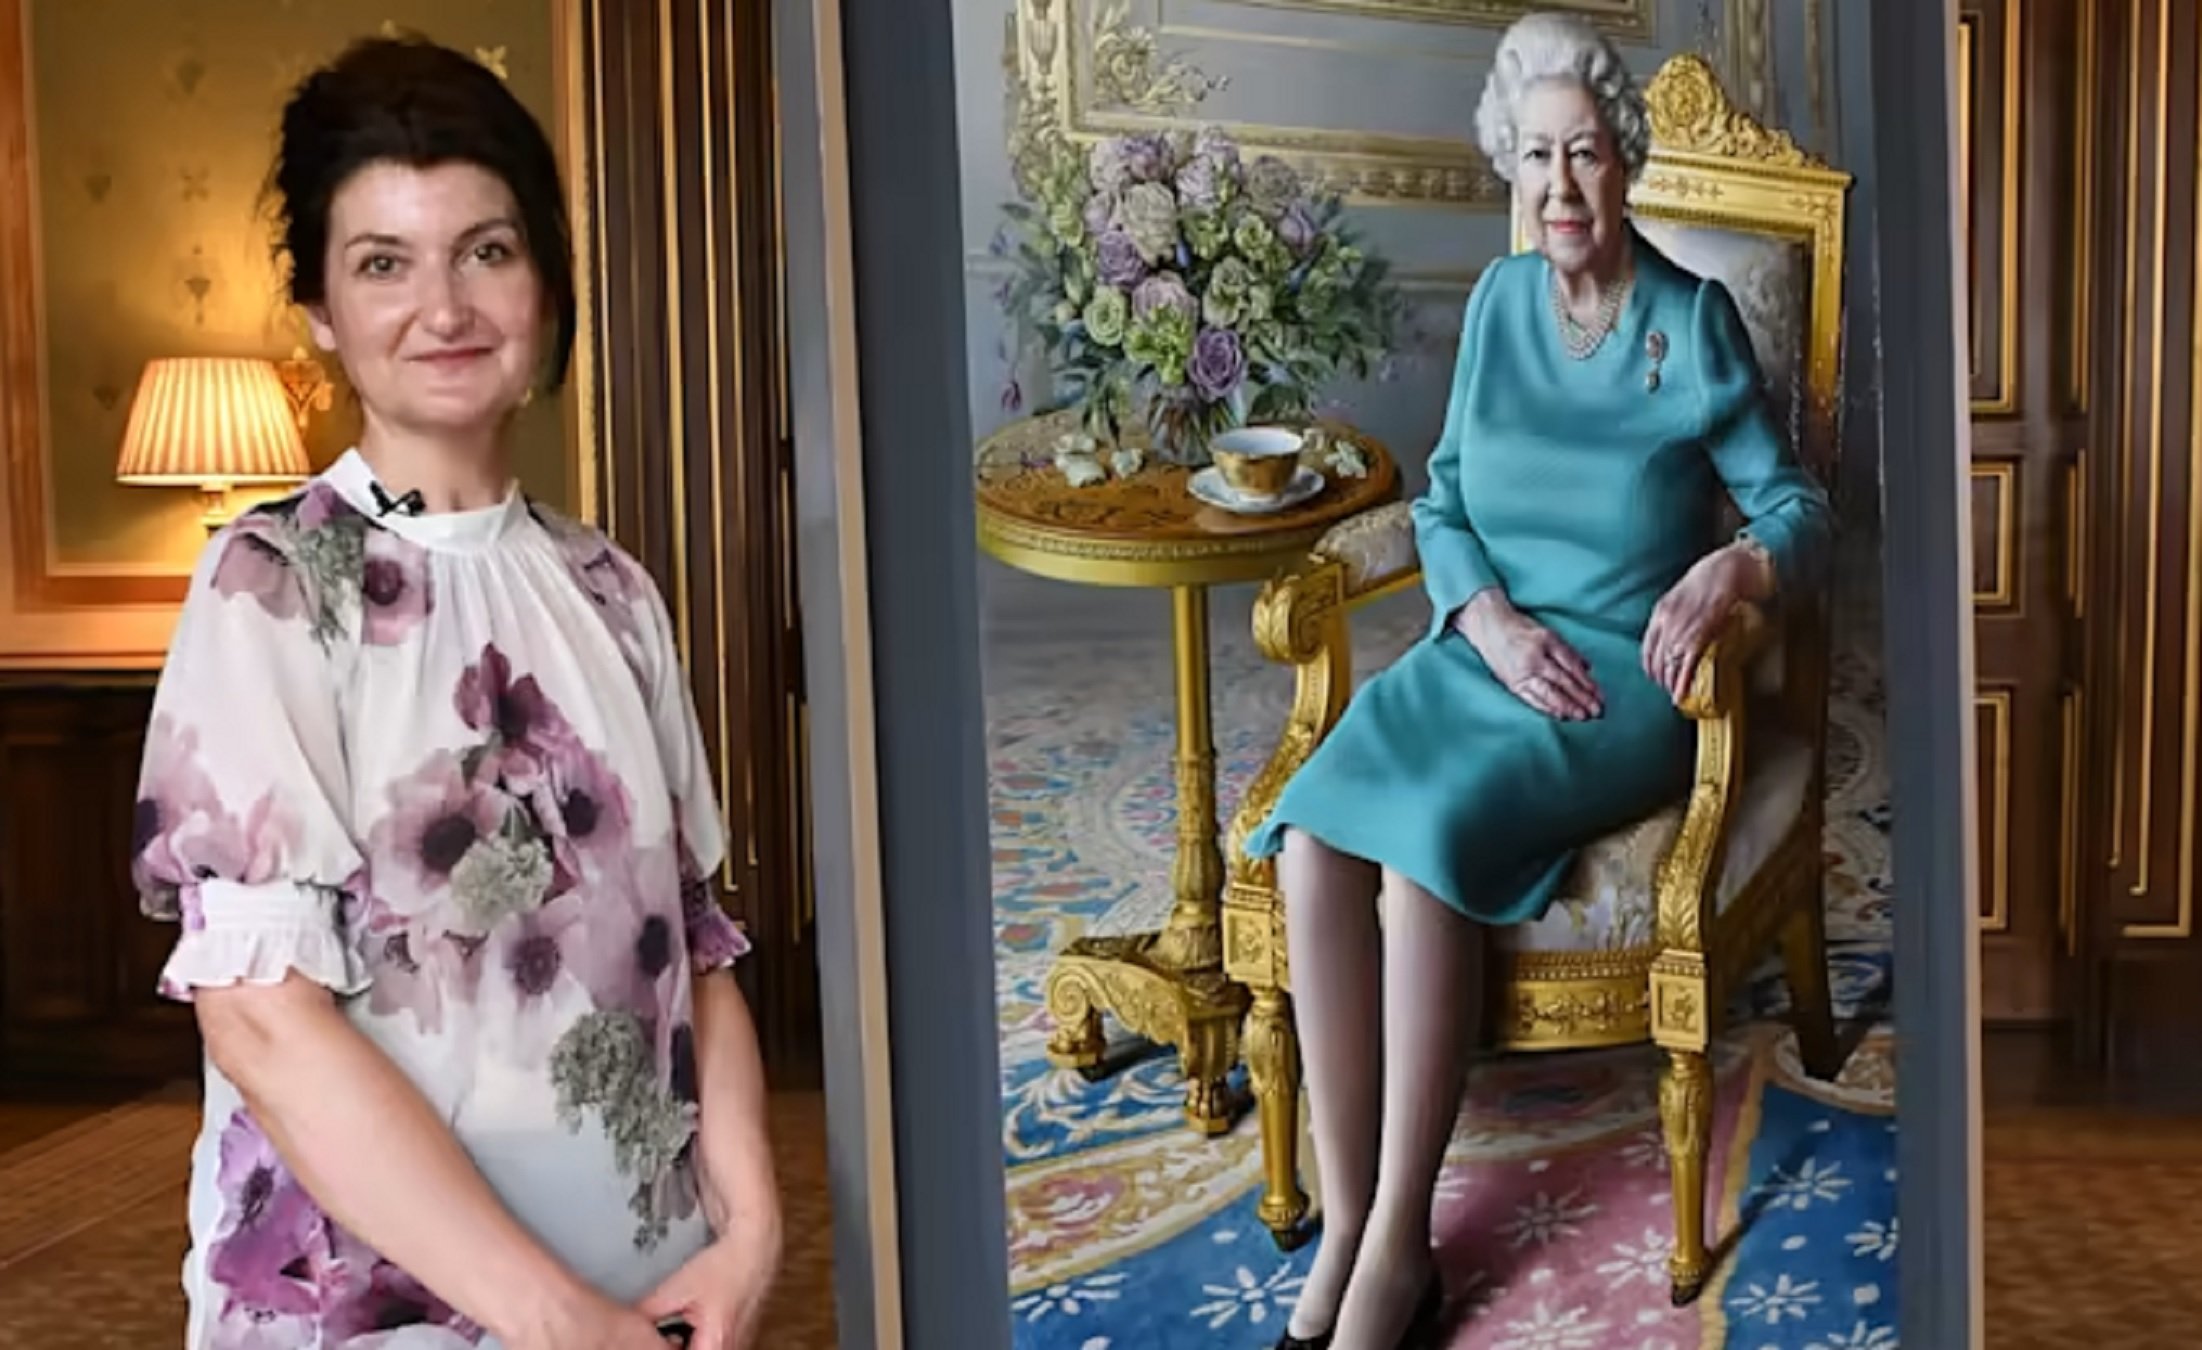 La pintora catalana que se citó dos veces con Isabel II (y la retrató) cuenta cómo es realmente la reina